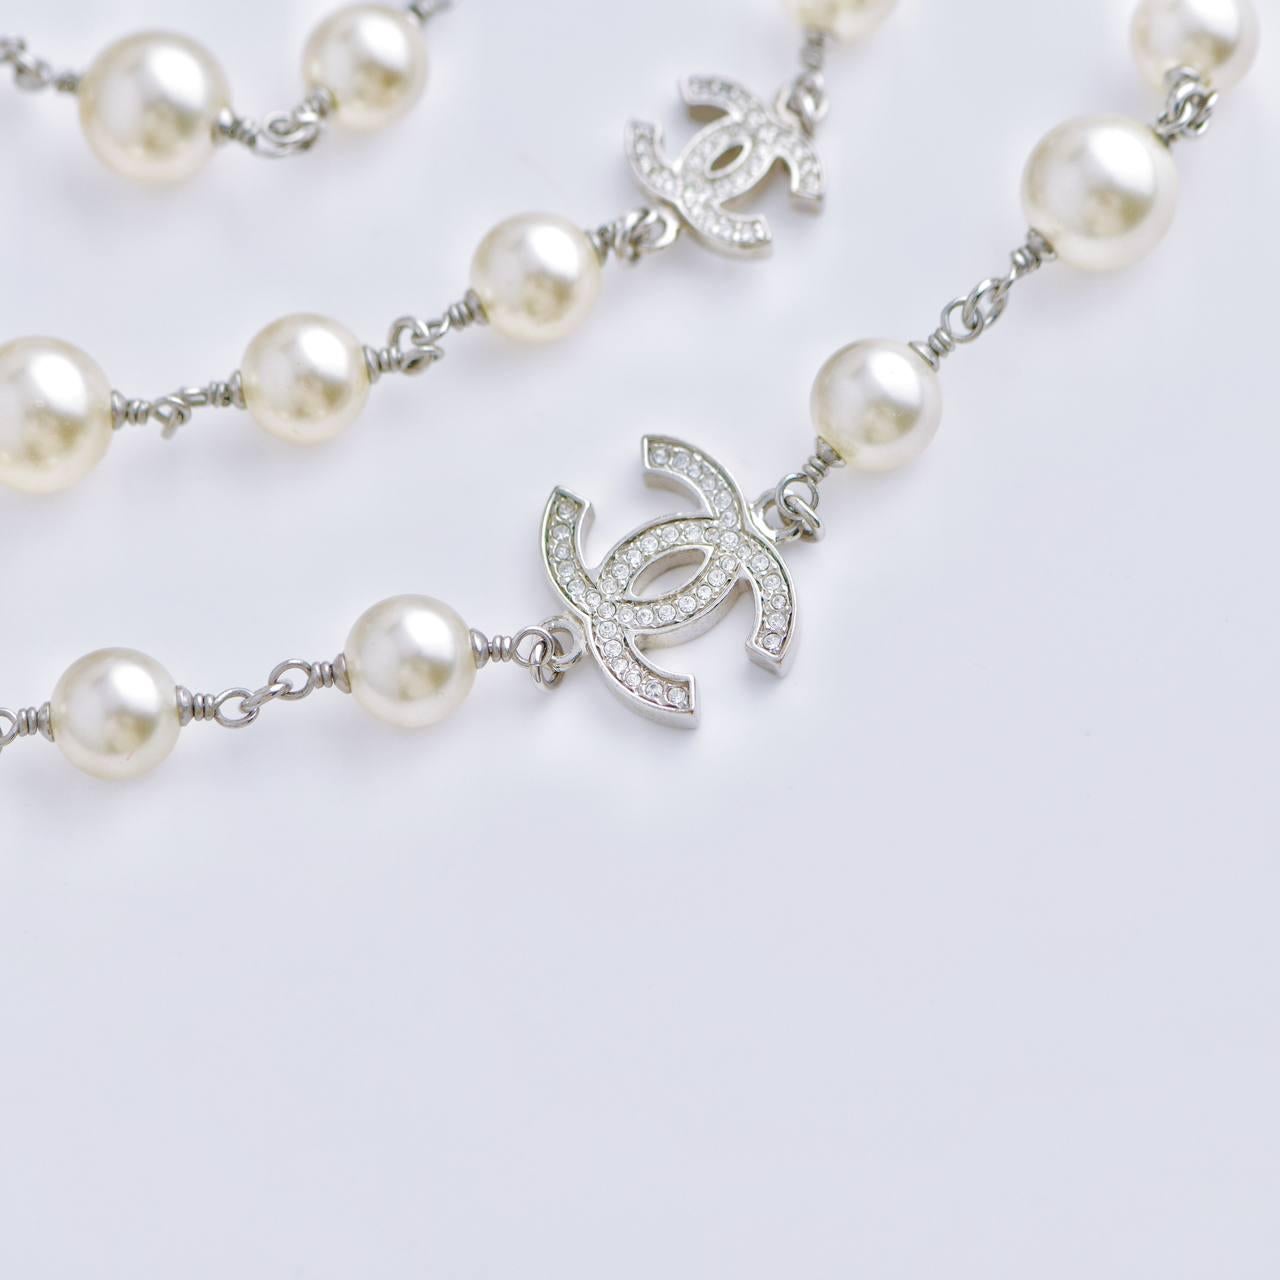 Chanel Five CC Logo Pearl Sautoir Necklace For Sale 1